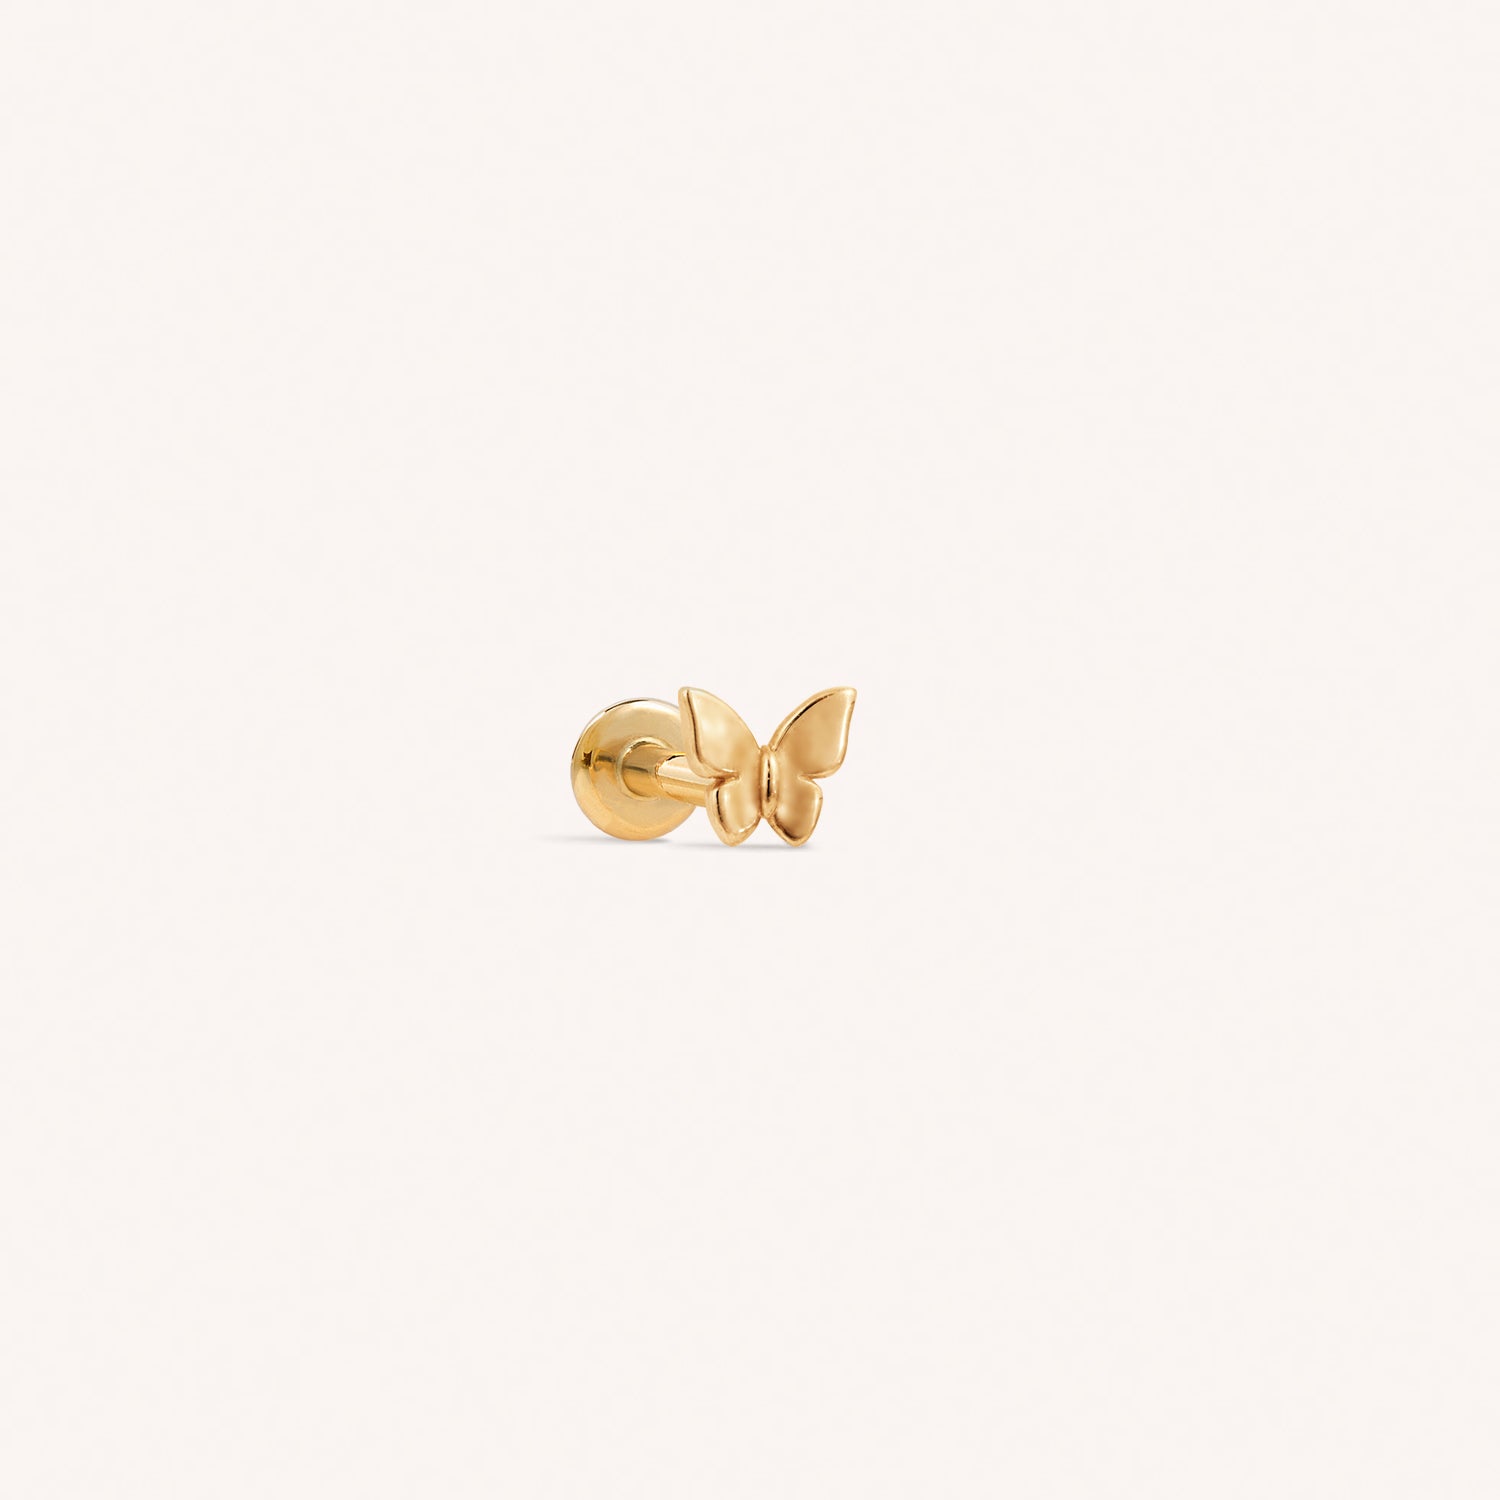 Solid 14k Gold Butterfly Earring Back